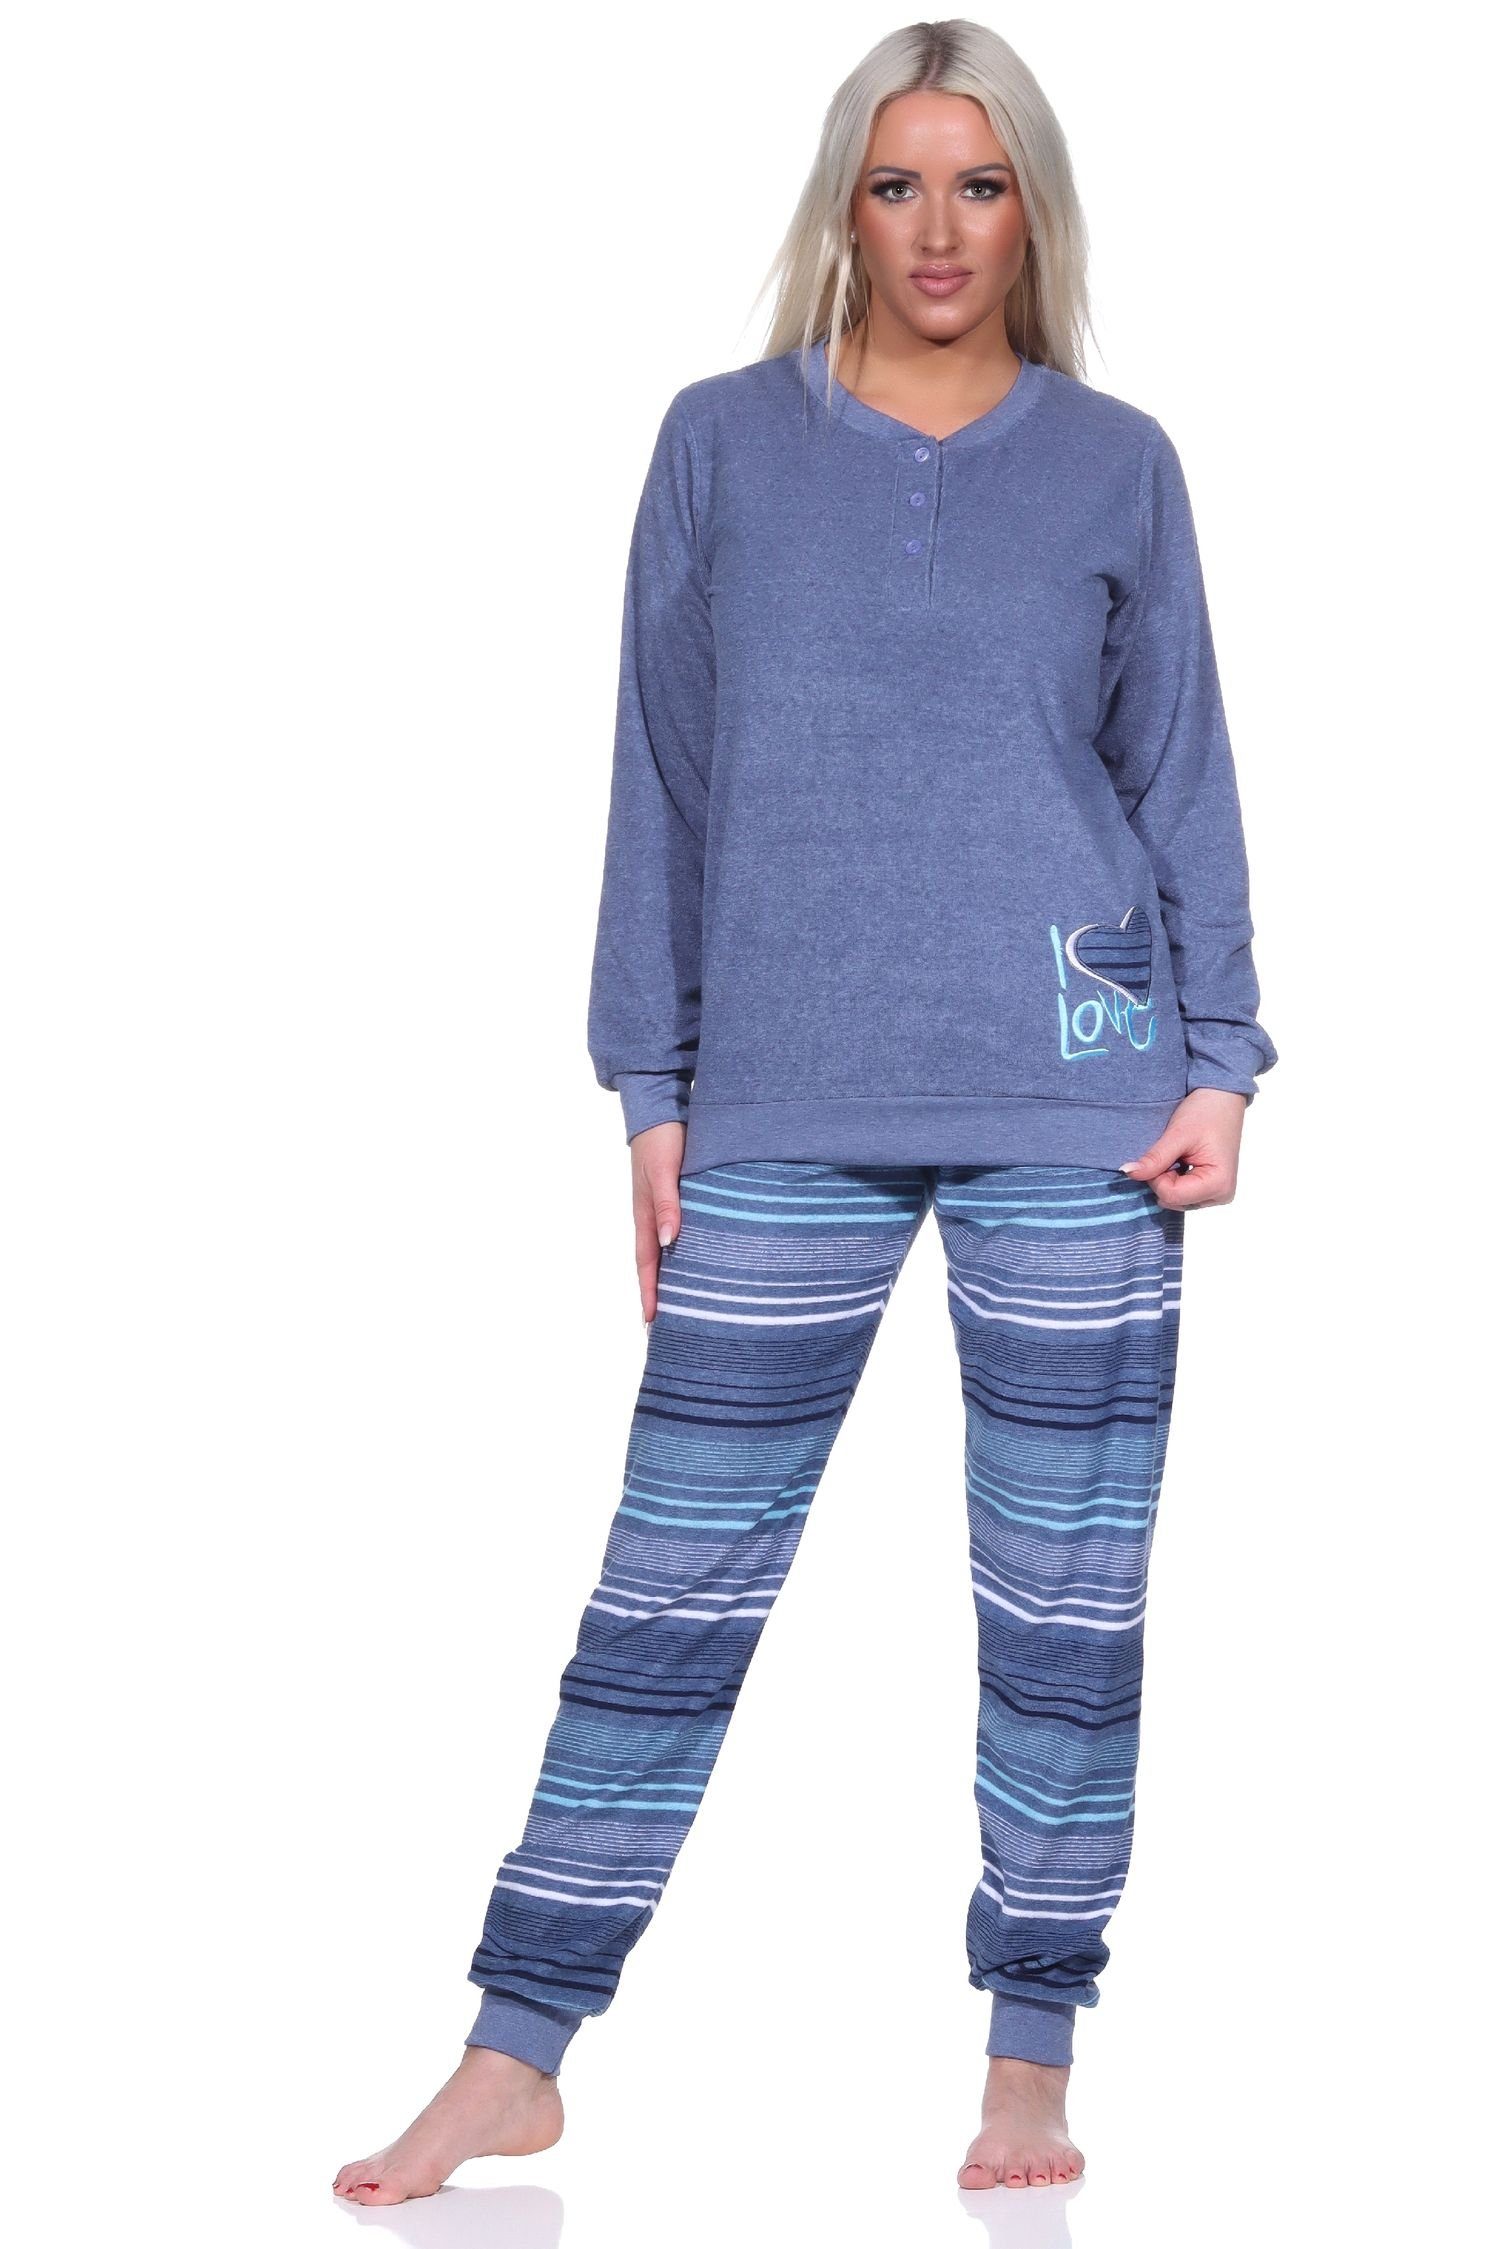 Bündchen Damen blau-melange gestreift mit langarm Pyjama Frottee Schlafanzug Normann Hose